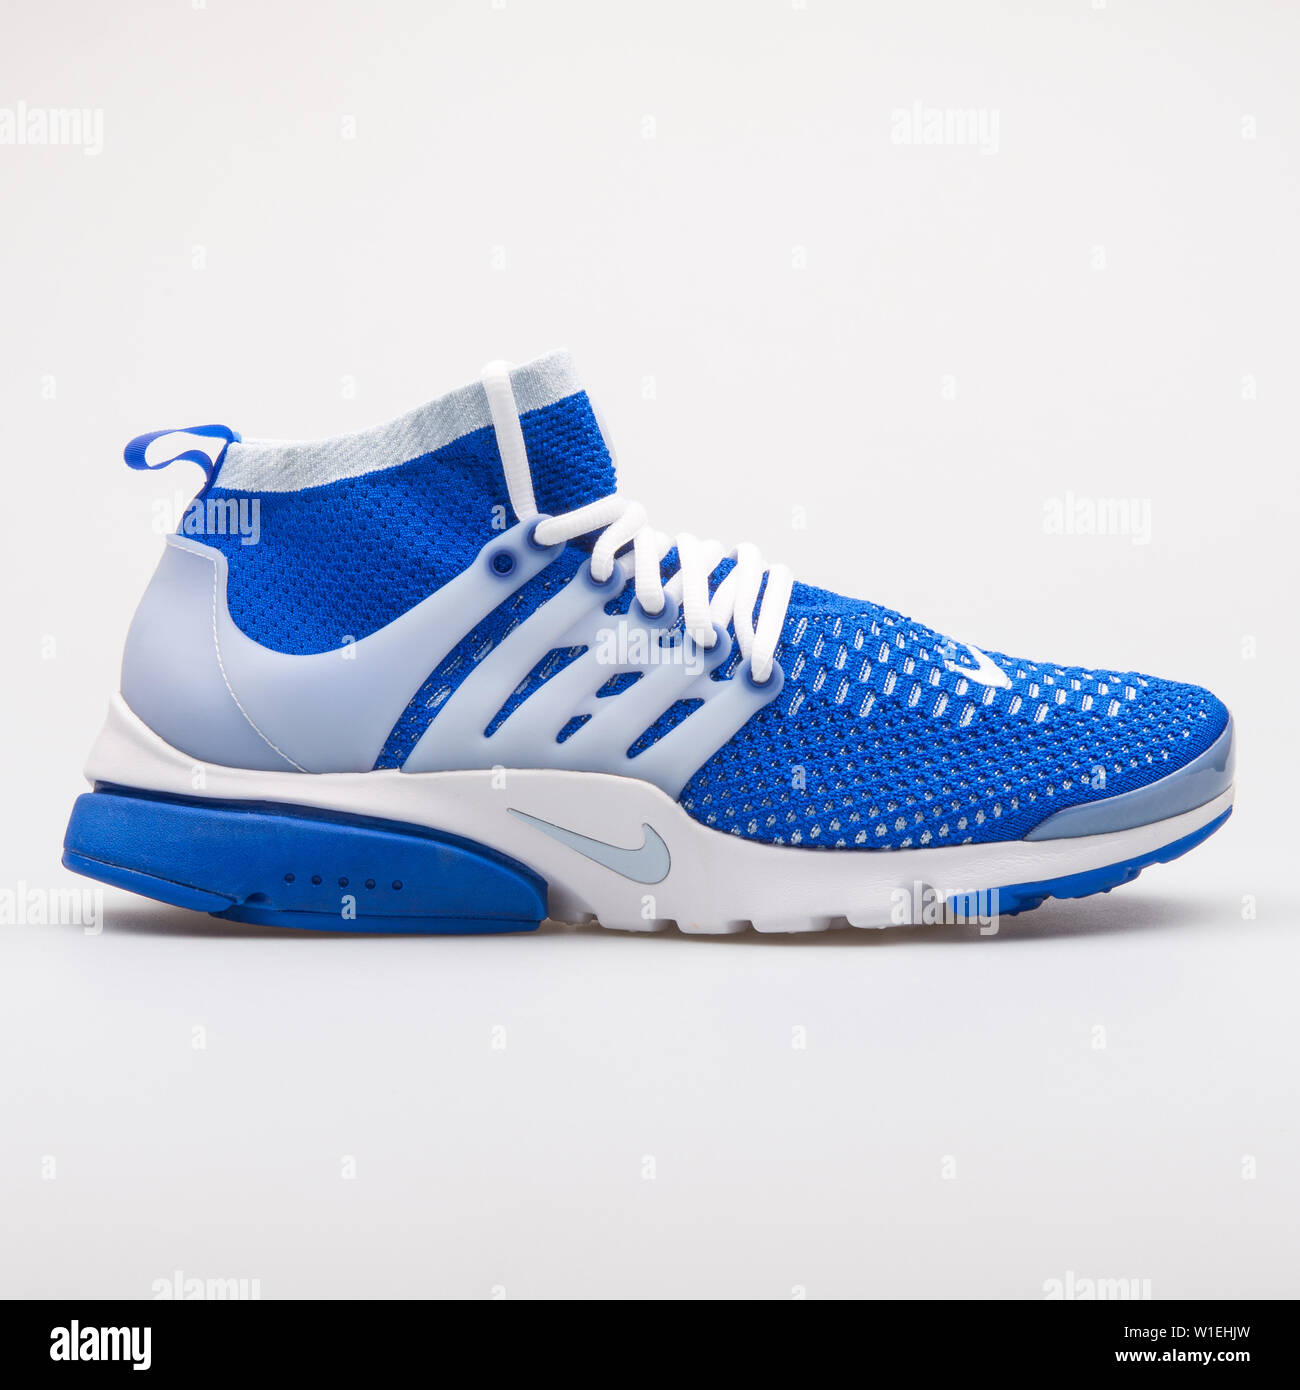 Wien, Österreich - 23 August 2017: Nike Air Presto Flyknit Ultra blaue und  weiße Sneaker auf weißem Hintergrund Stockfotografie - Alamy